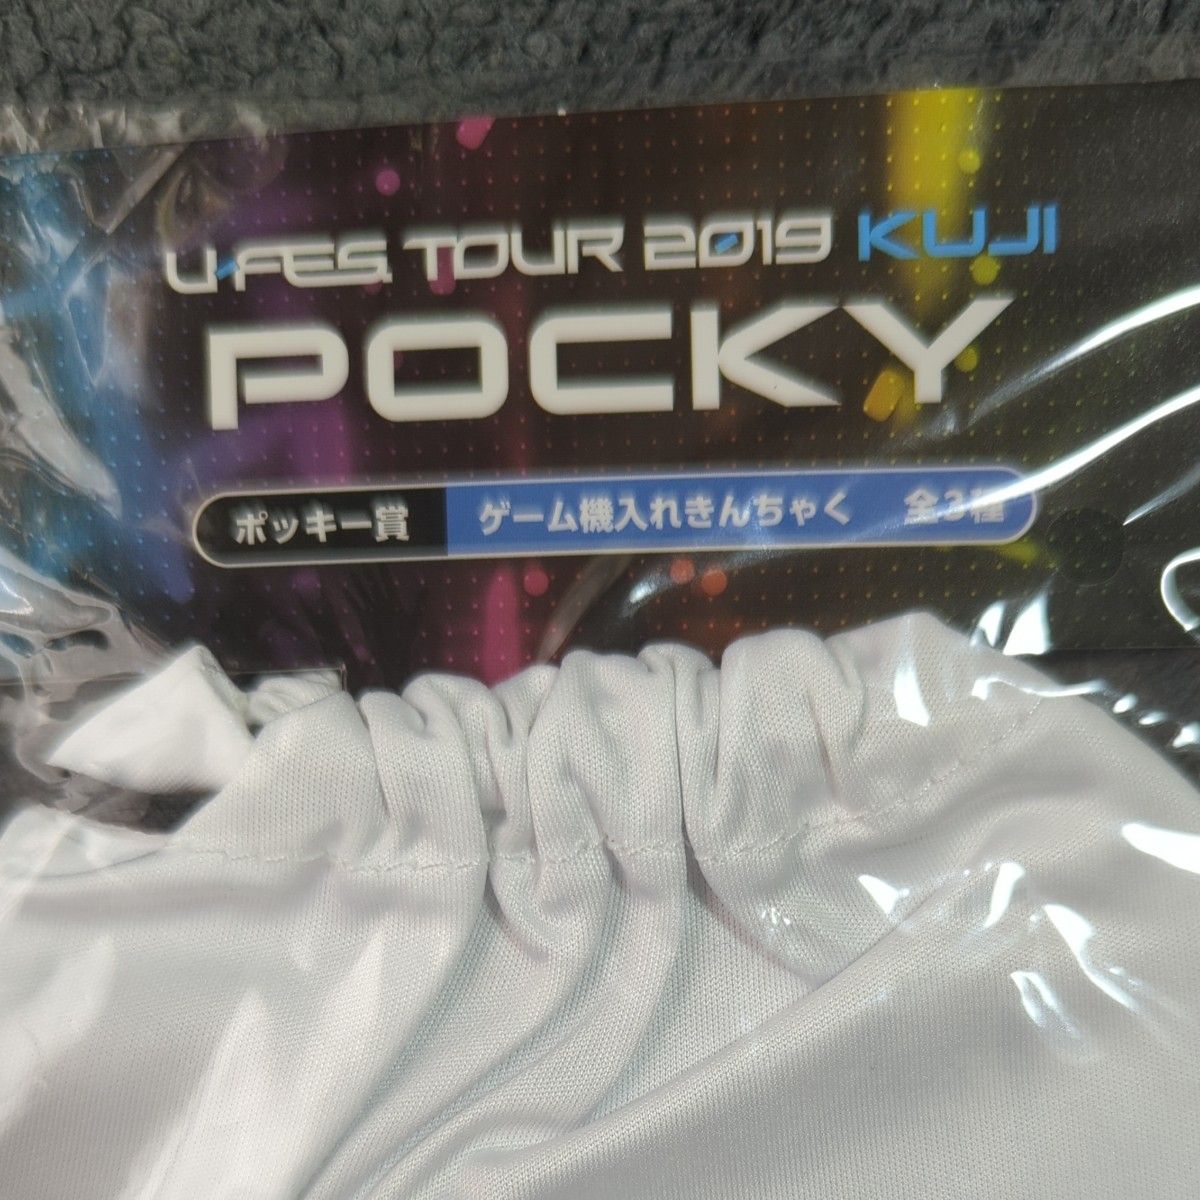 U-FES . TOUR 2019 KUJI ポッキー ゲーム機 入れ 巾着